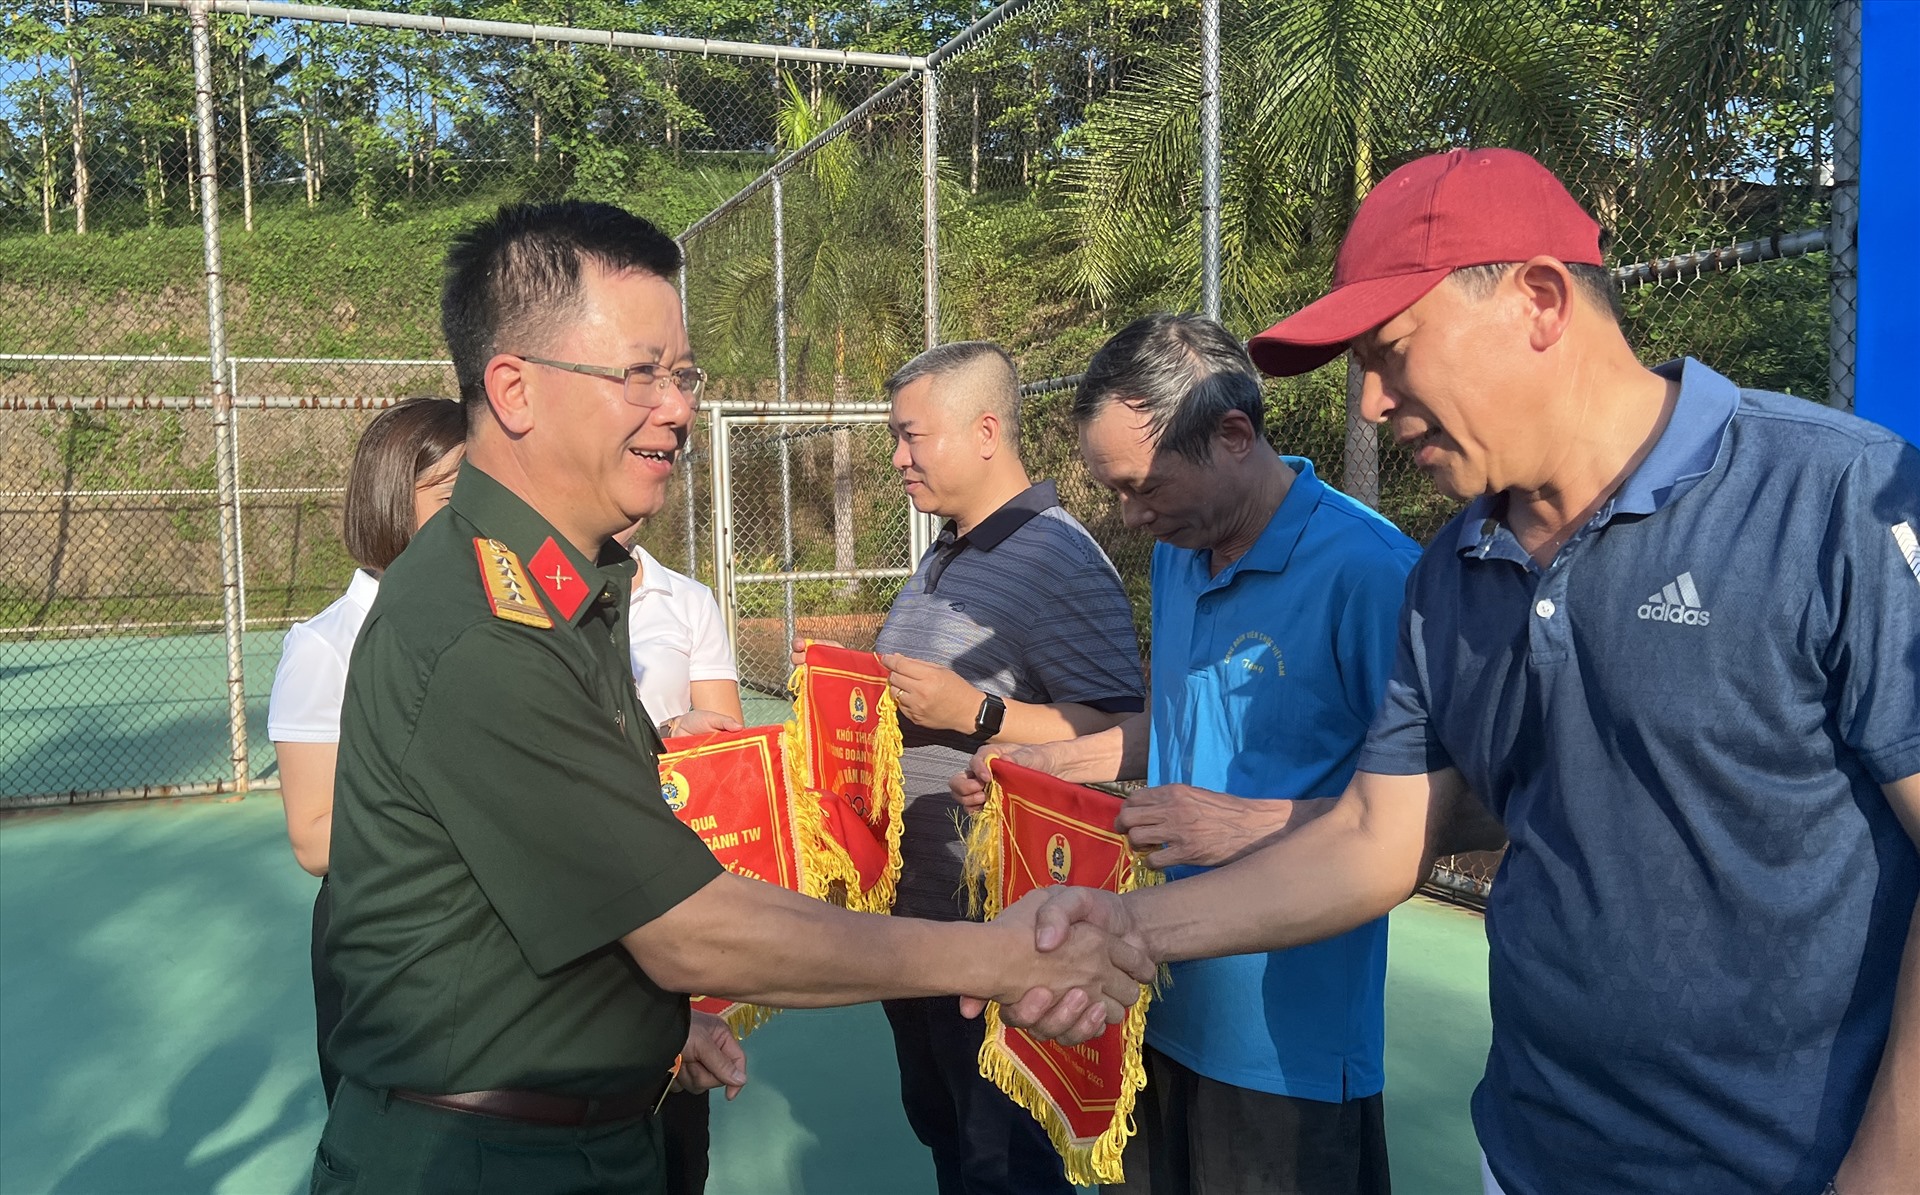 Đại tá Nguyễn Đình Đức trao cờ lưu niệm cho các vận động viên. Ảnh: Kiều Vũ